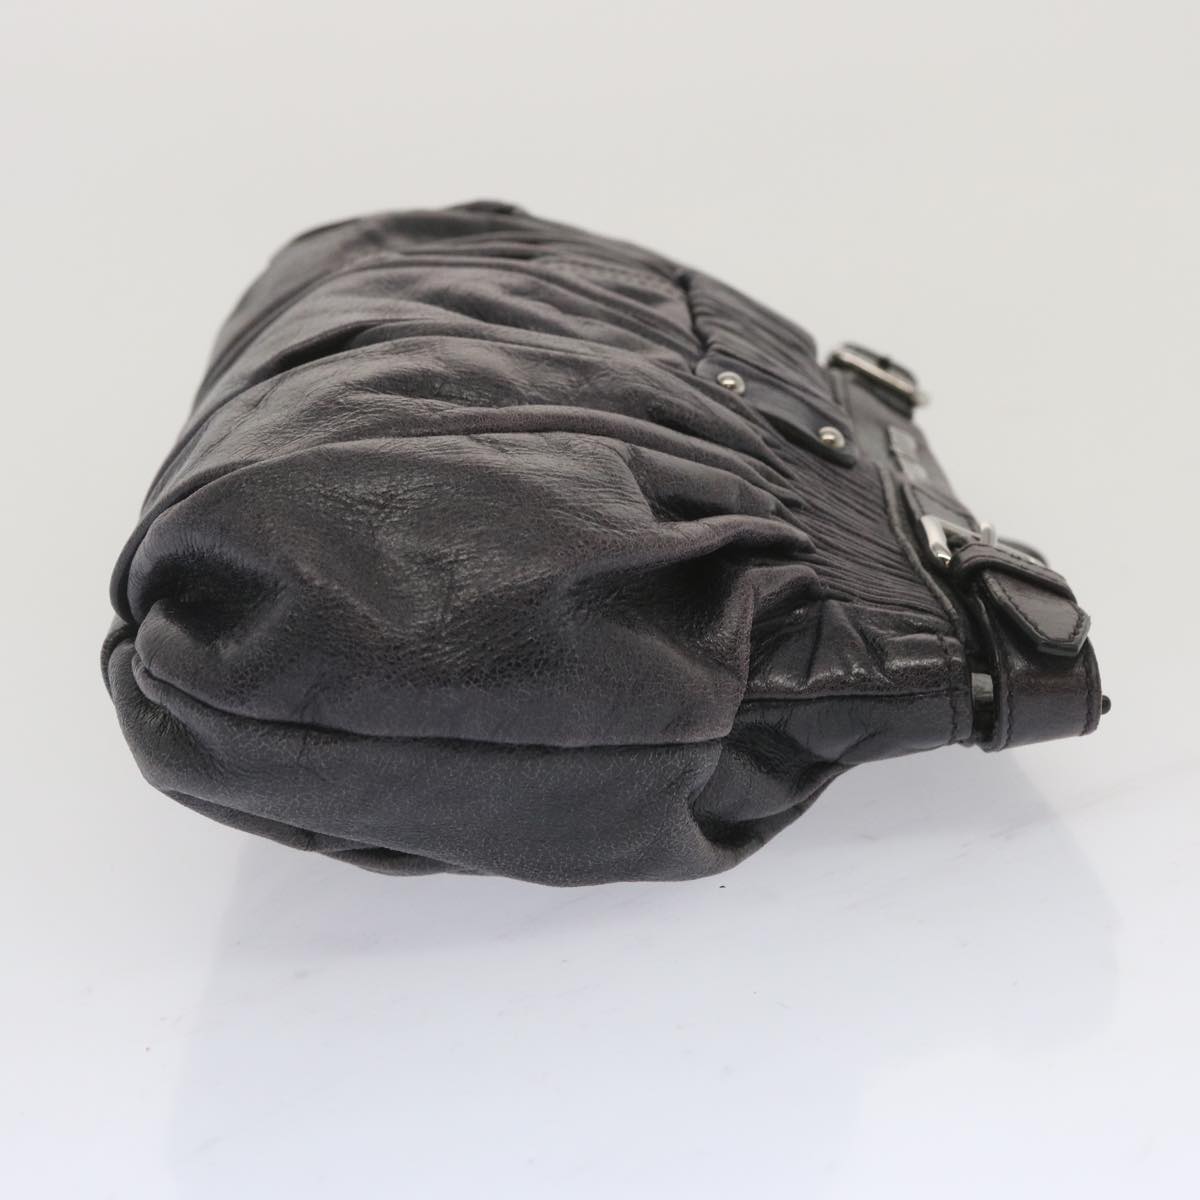 Miu Miu Clutch Bag Leather Purple Auth bs11183